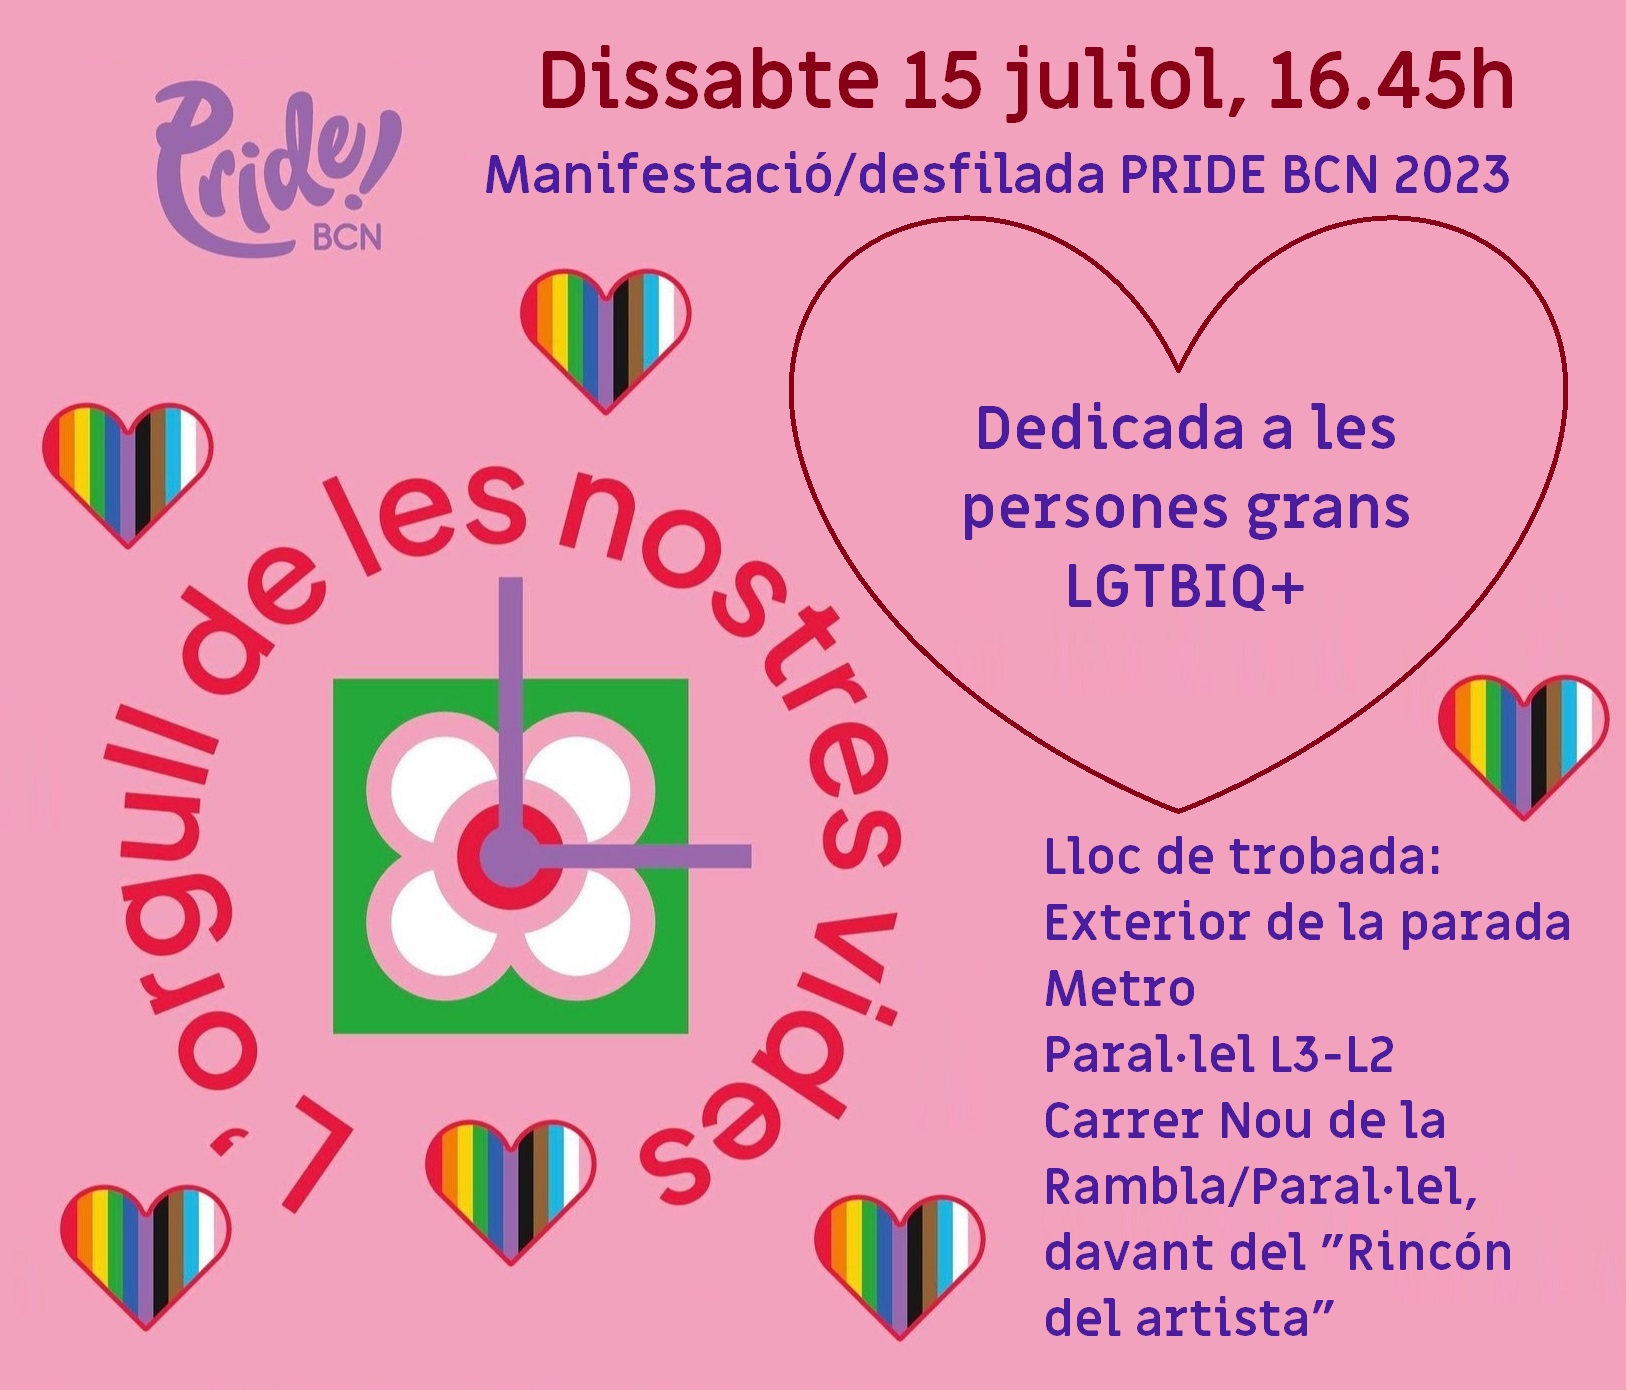 Sábado, 15 de julio de 2023 a las 16:45: #PrideBCN2023